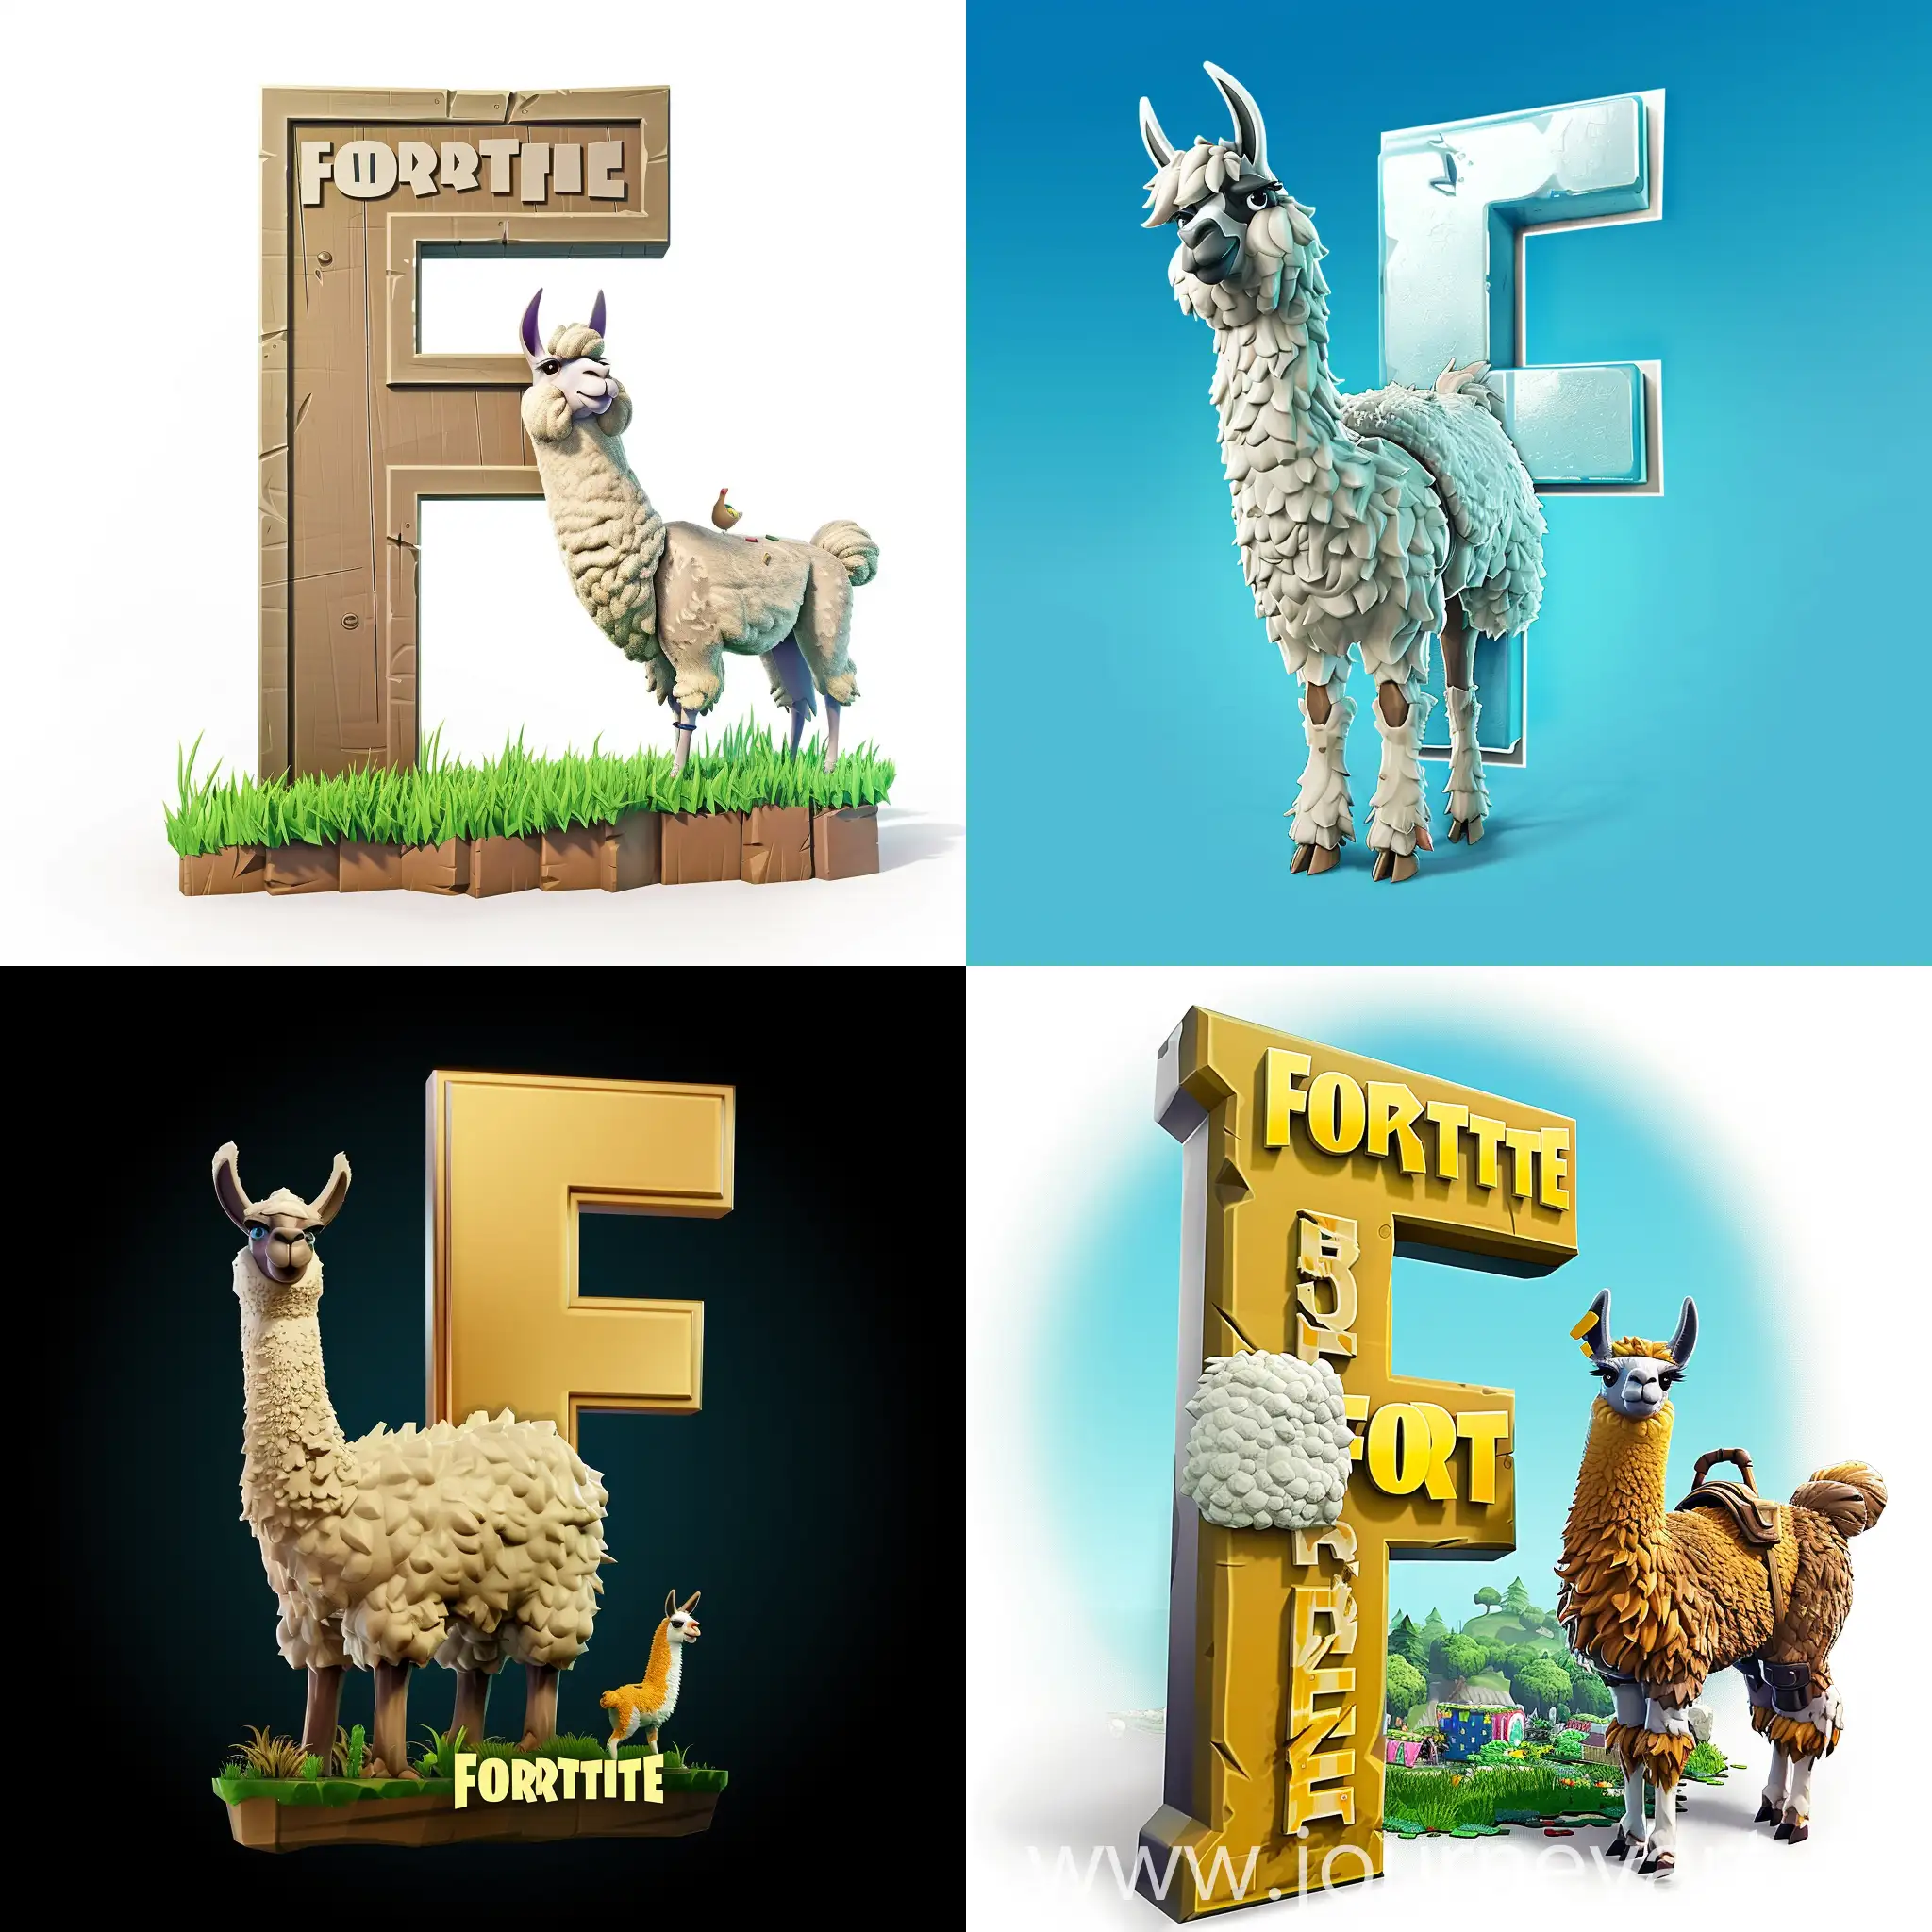 логотип Fortnite буквой F, рядом надпись Fortnite For и лама из Fortnite